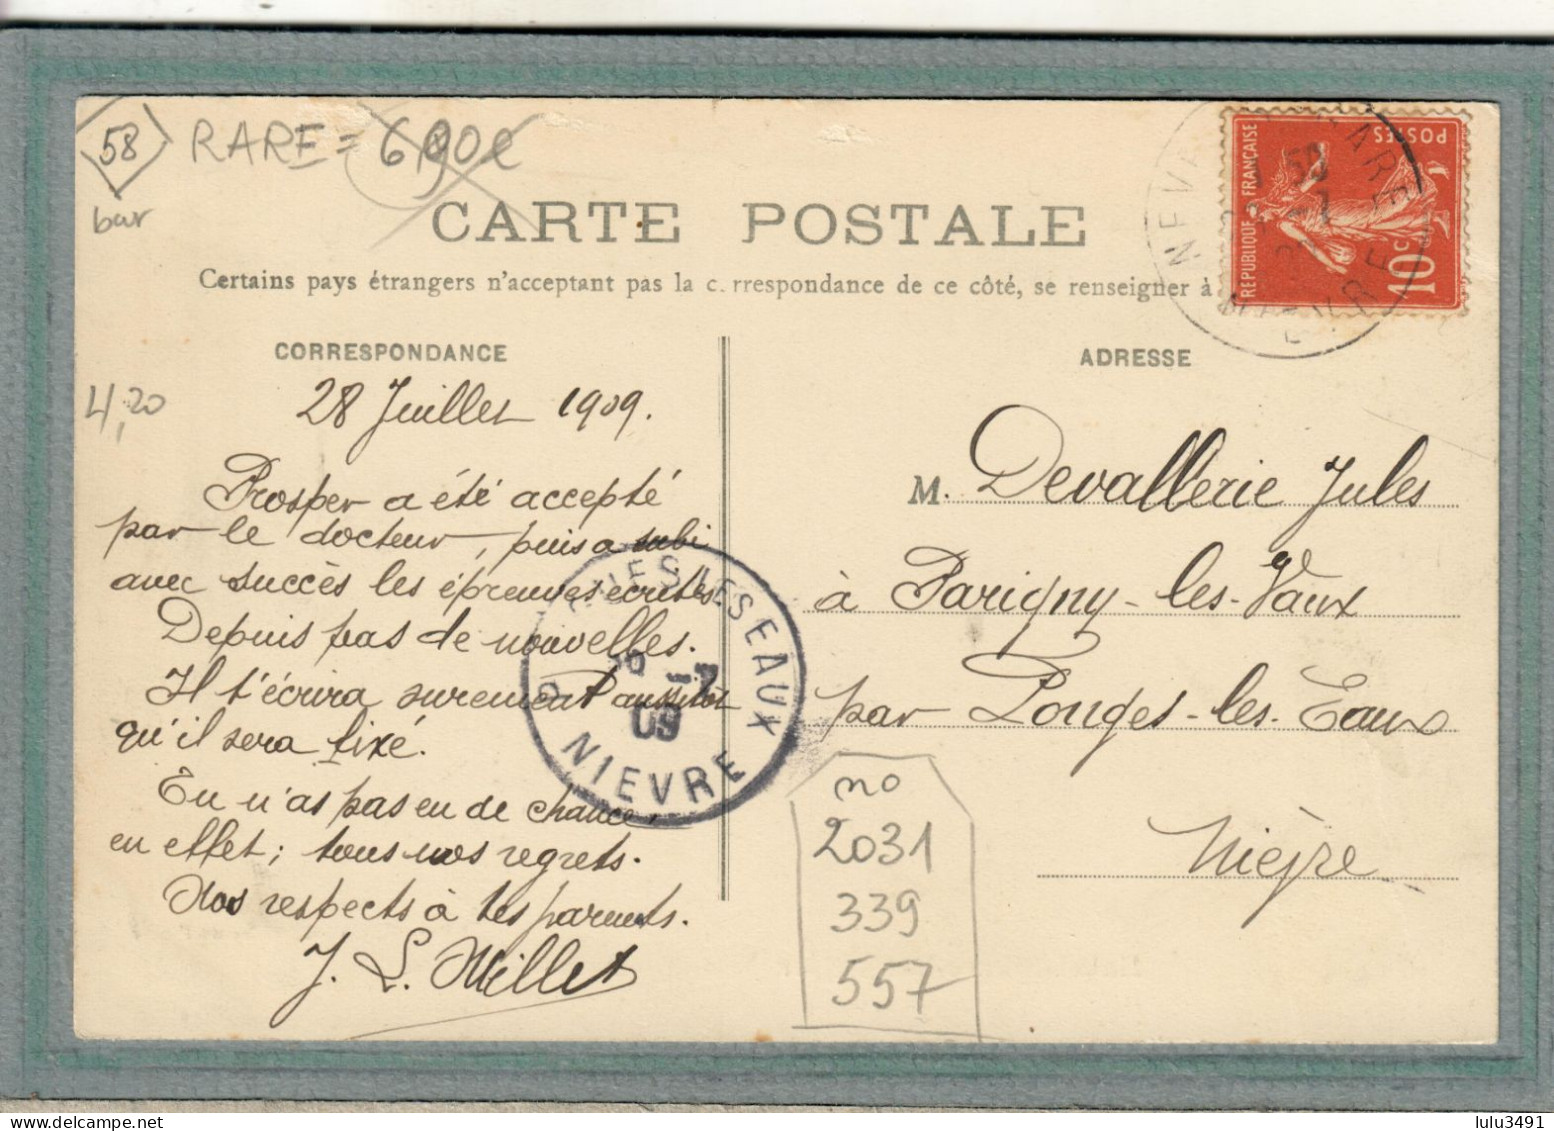 CPA (58) SAINT-PIERRE-le-MOUTIER - Aspect De L'avenue De La Gare En 1909 - Saint Pierre Le Moutier